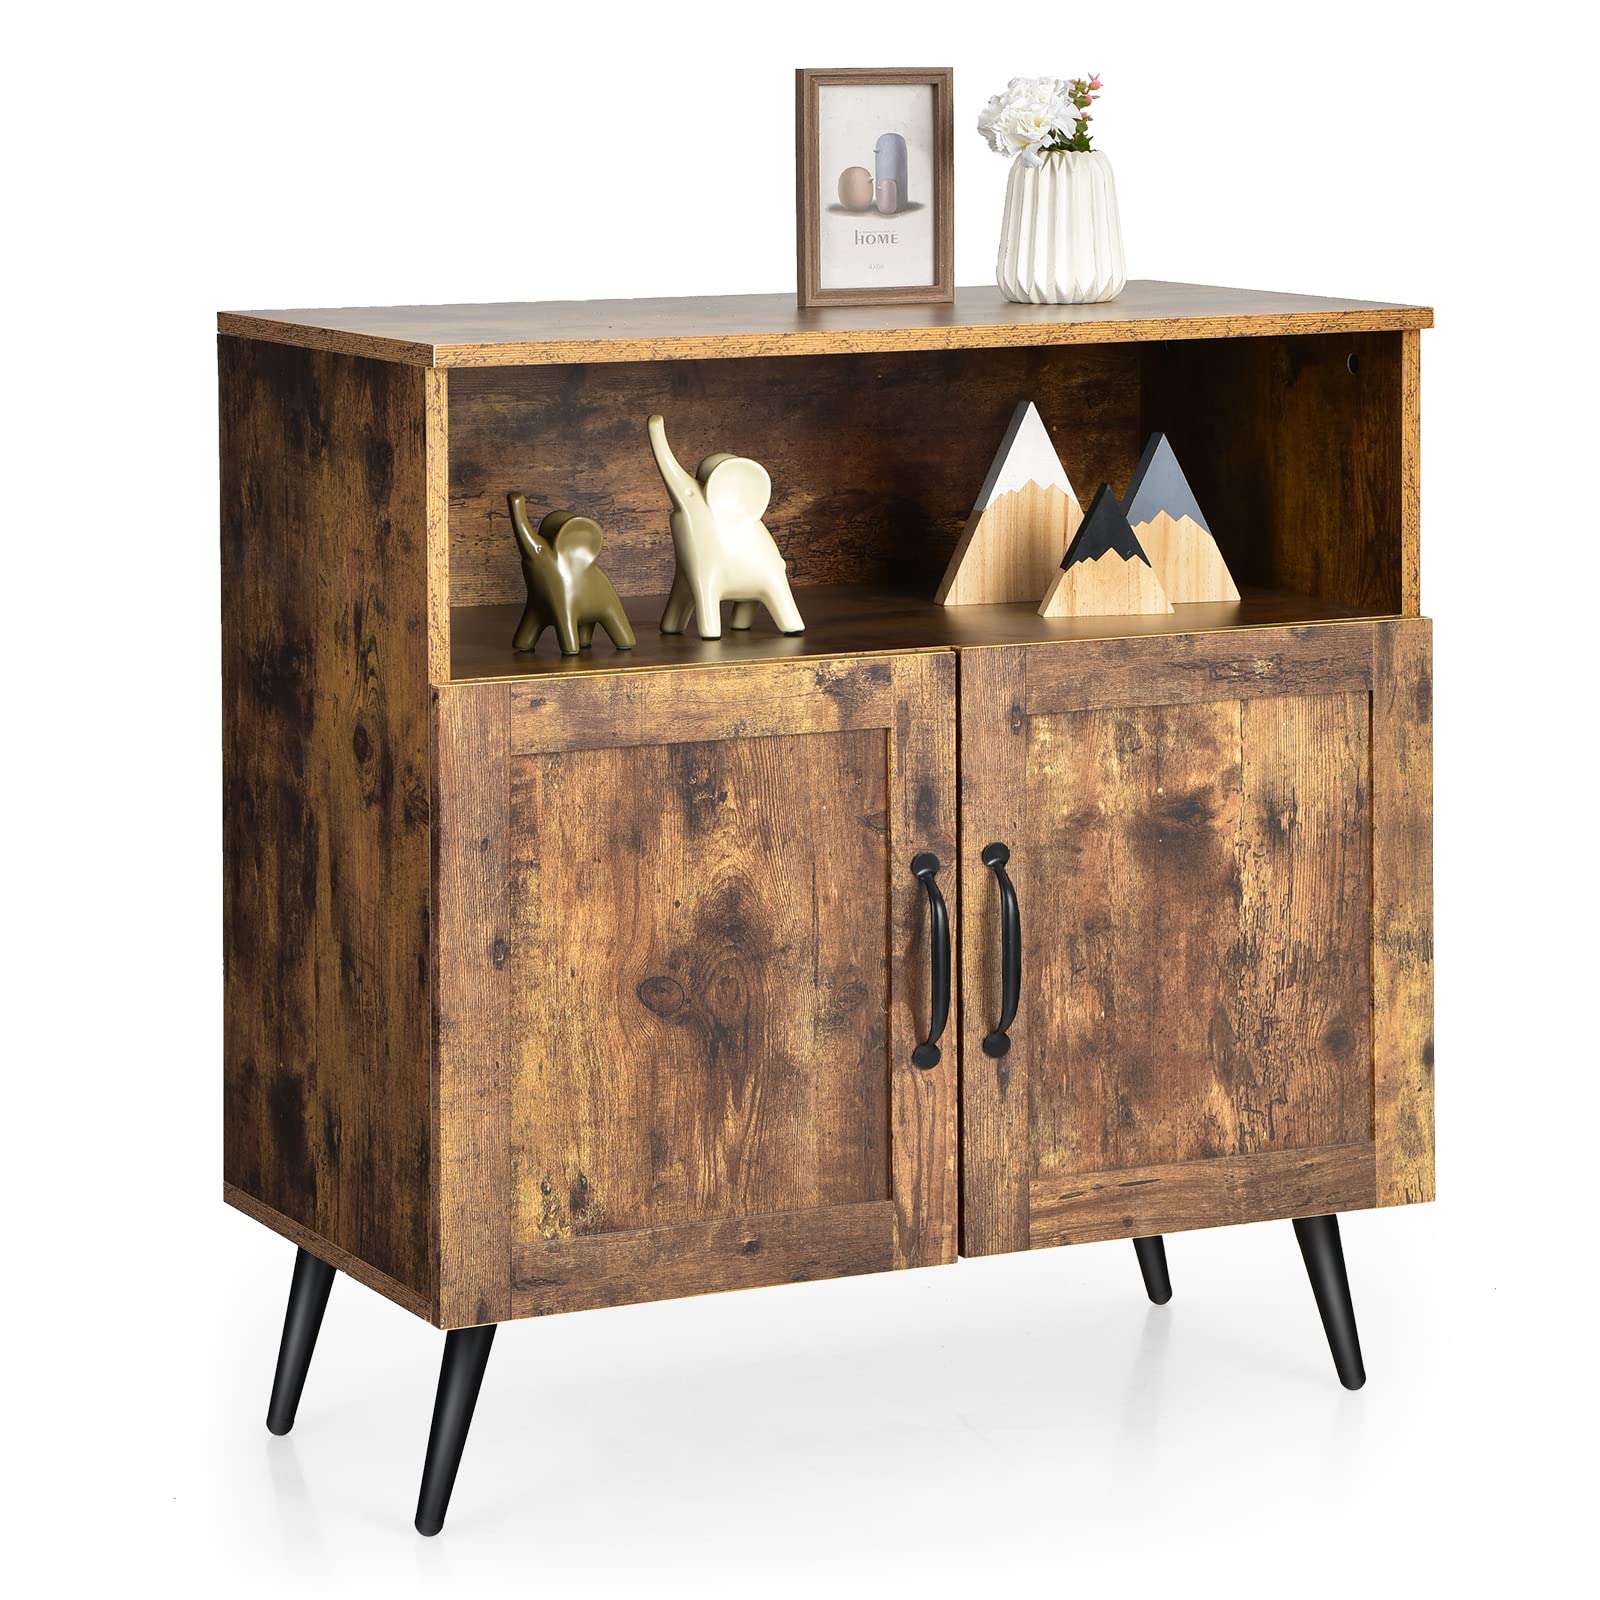 Giantex Mid-Century Storage Cabinet, Wooden Floor Cabinet with 2 Doors, Rustic Brown